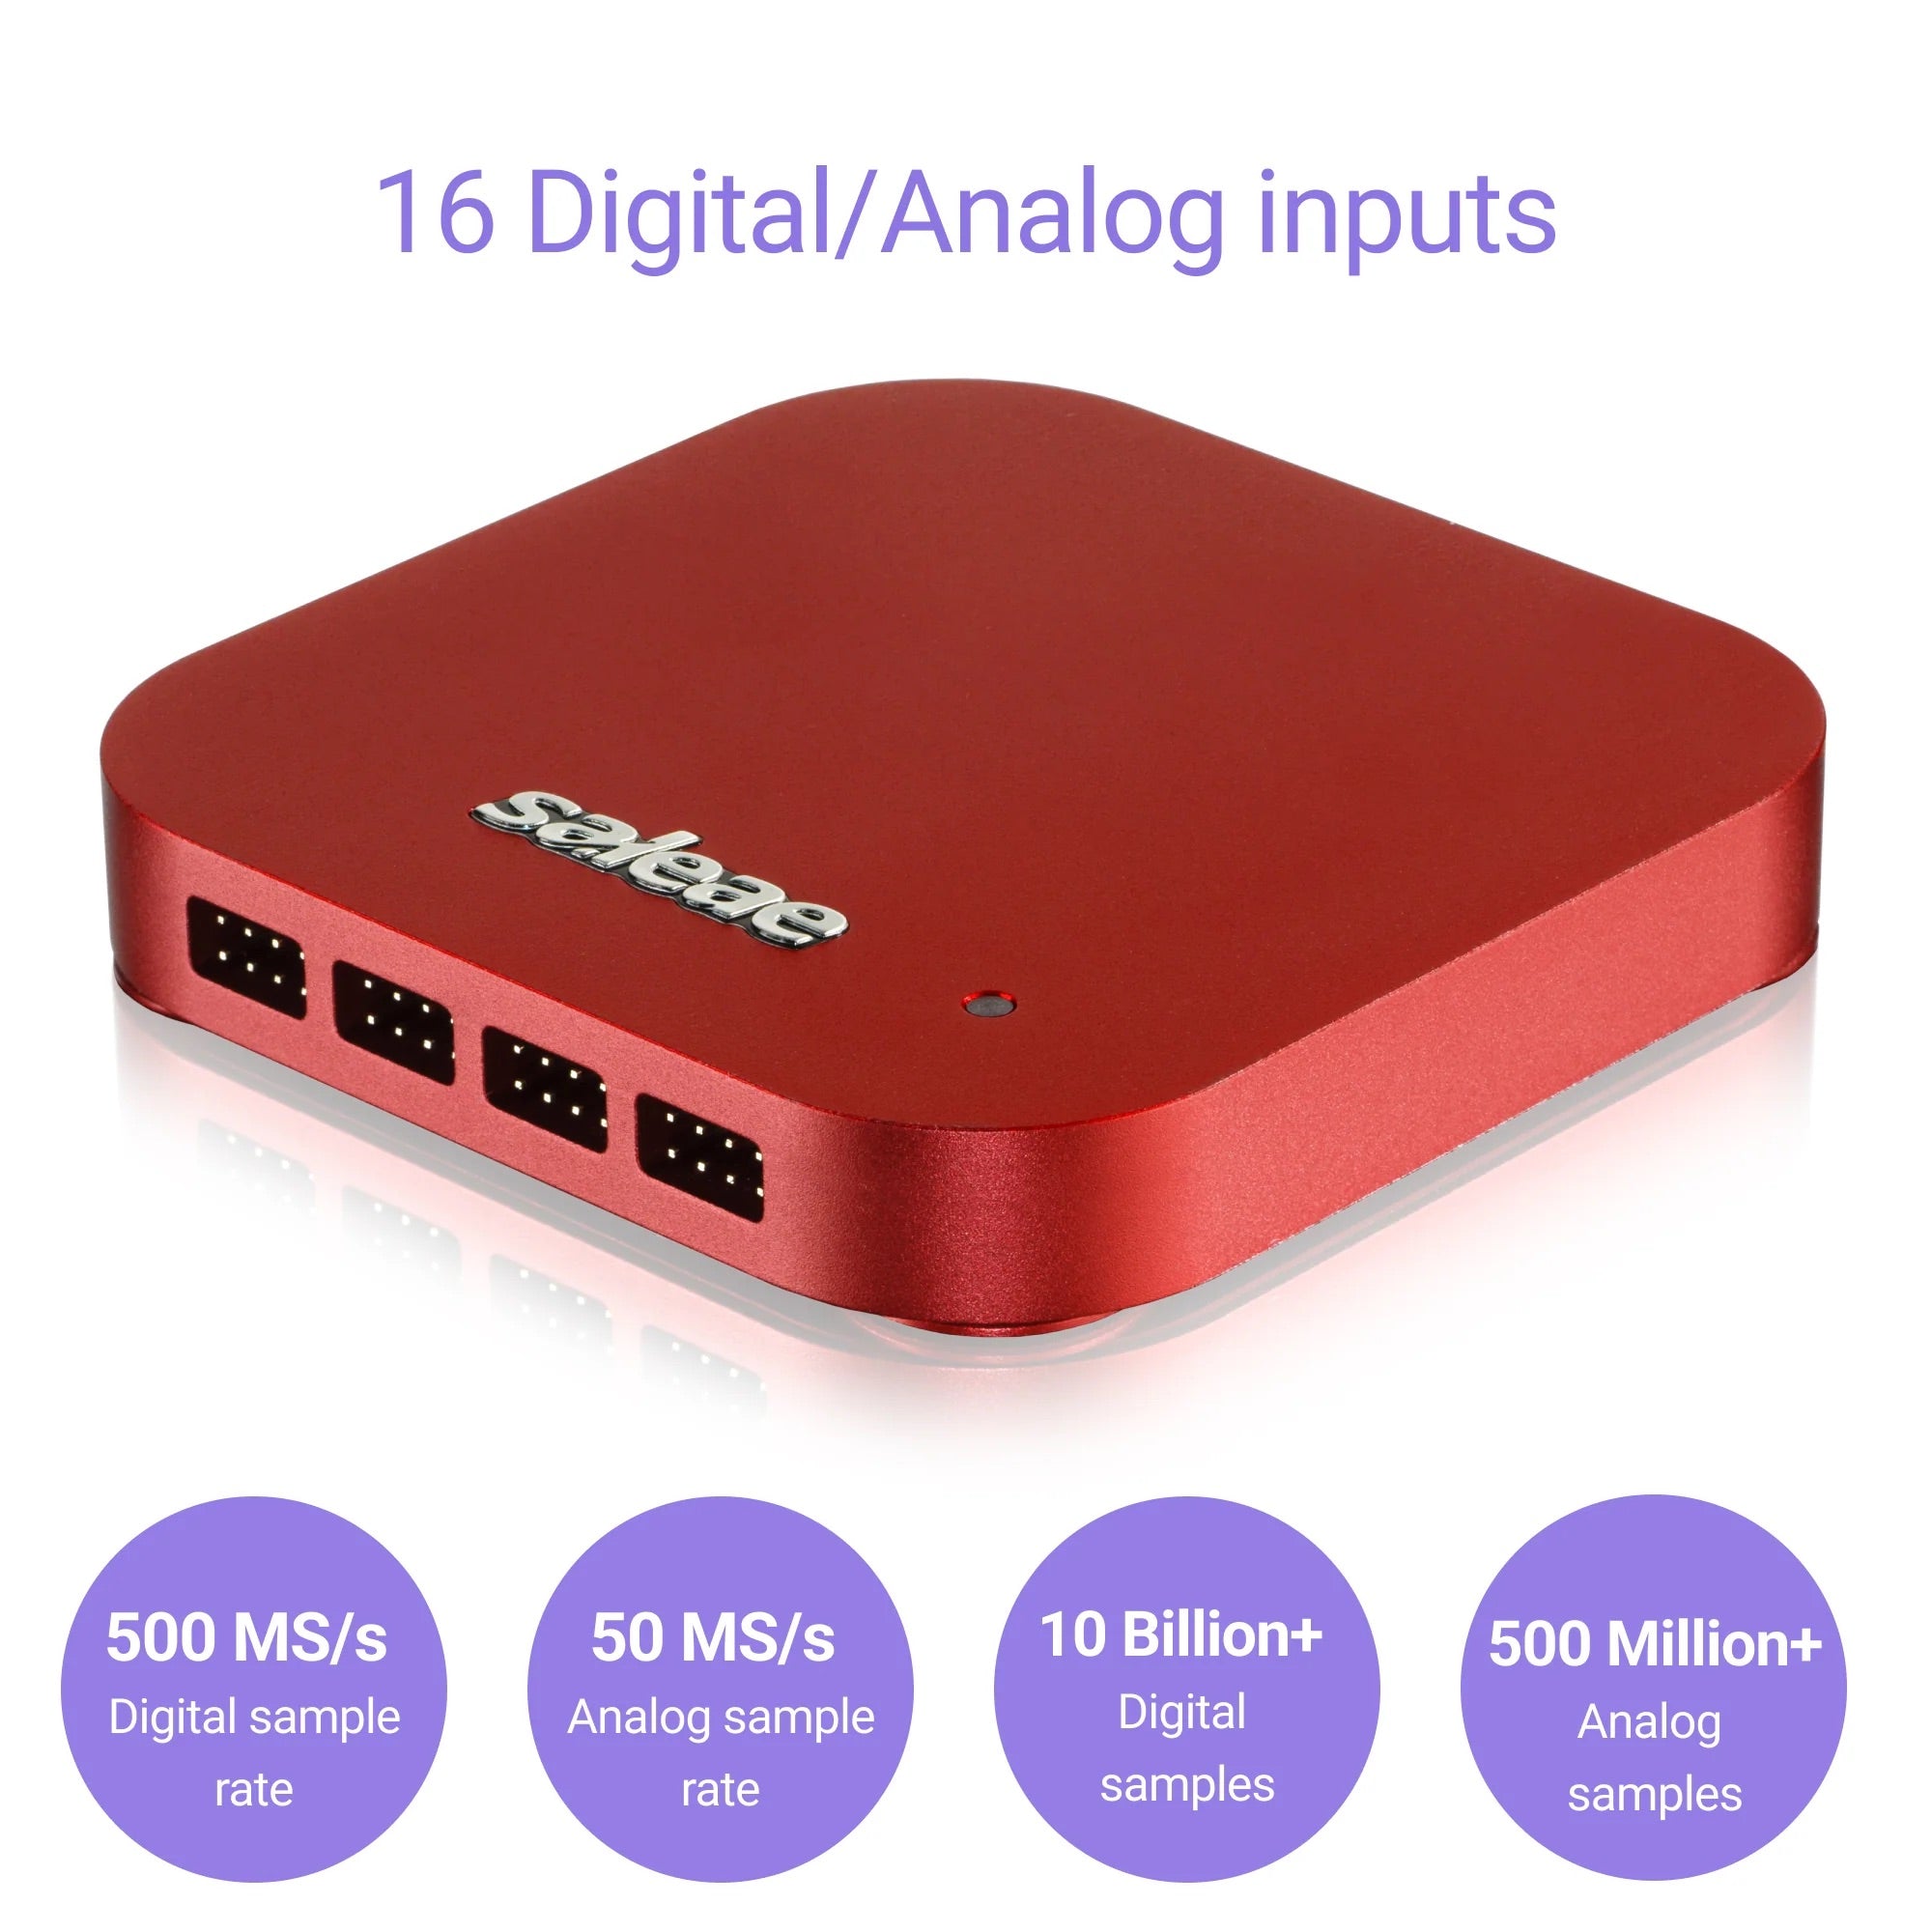 Saleae Logic Pro 16 - USB Logic Analyzer - Red